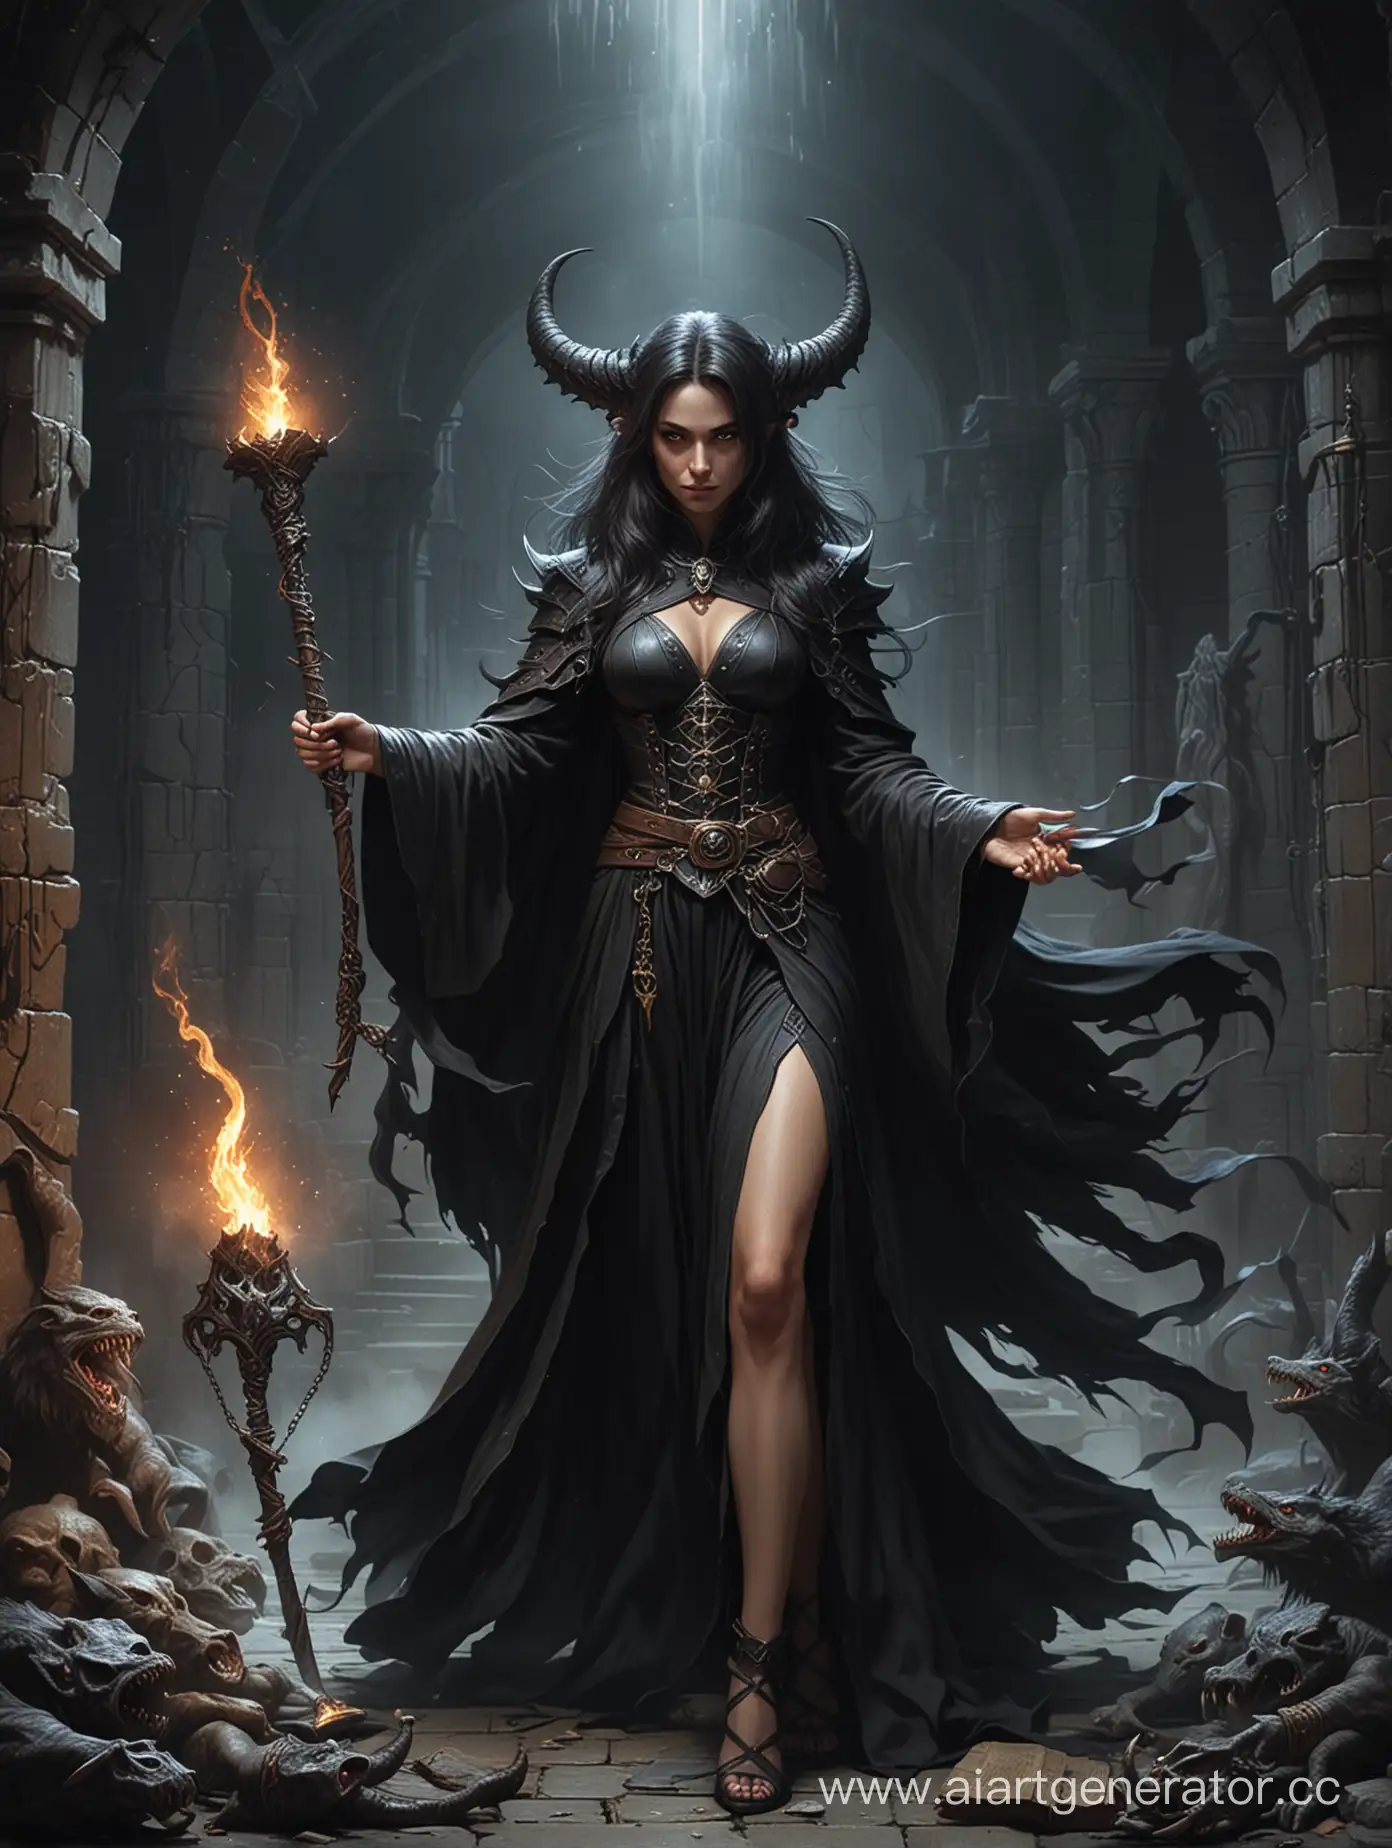 Заклинатель, укротитель тварей, женщина, черное одеяние, уродлива, подземелье,  Illustrations in the style of fantasy mythology,